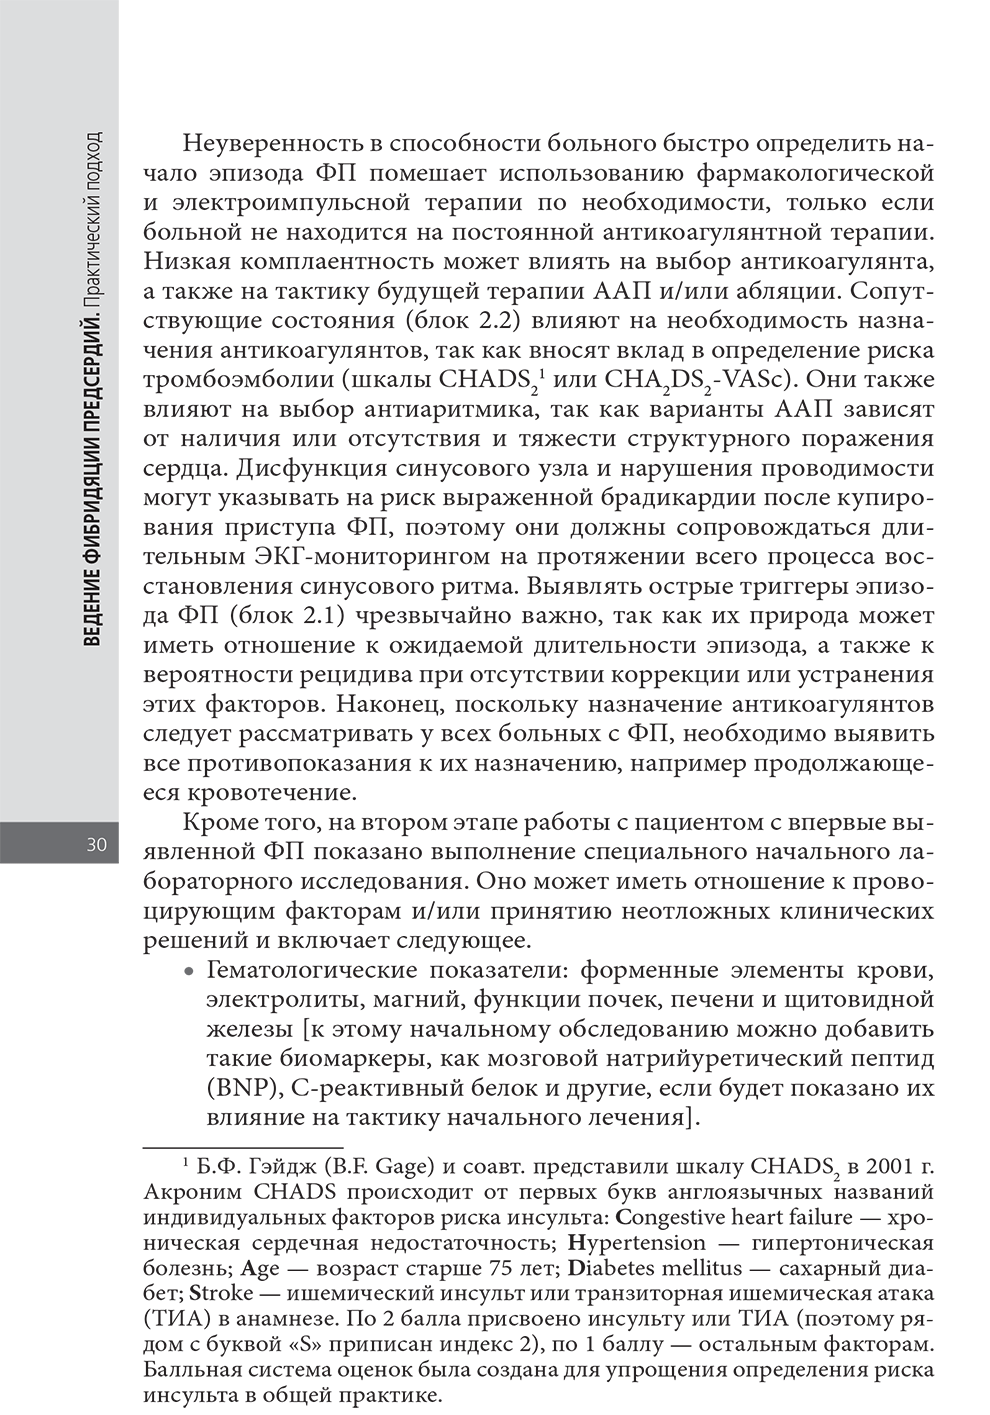 Пример страницы из книги "Ведение фибрилляции предсердий: практический подход" - М. Шинаса, А. Джона Камма